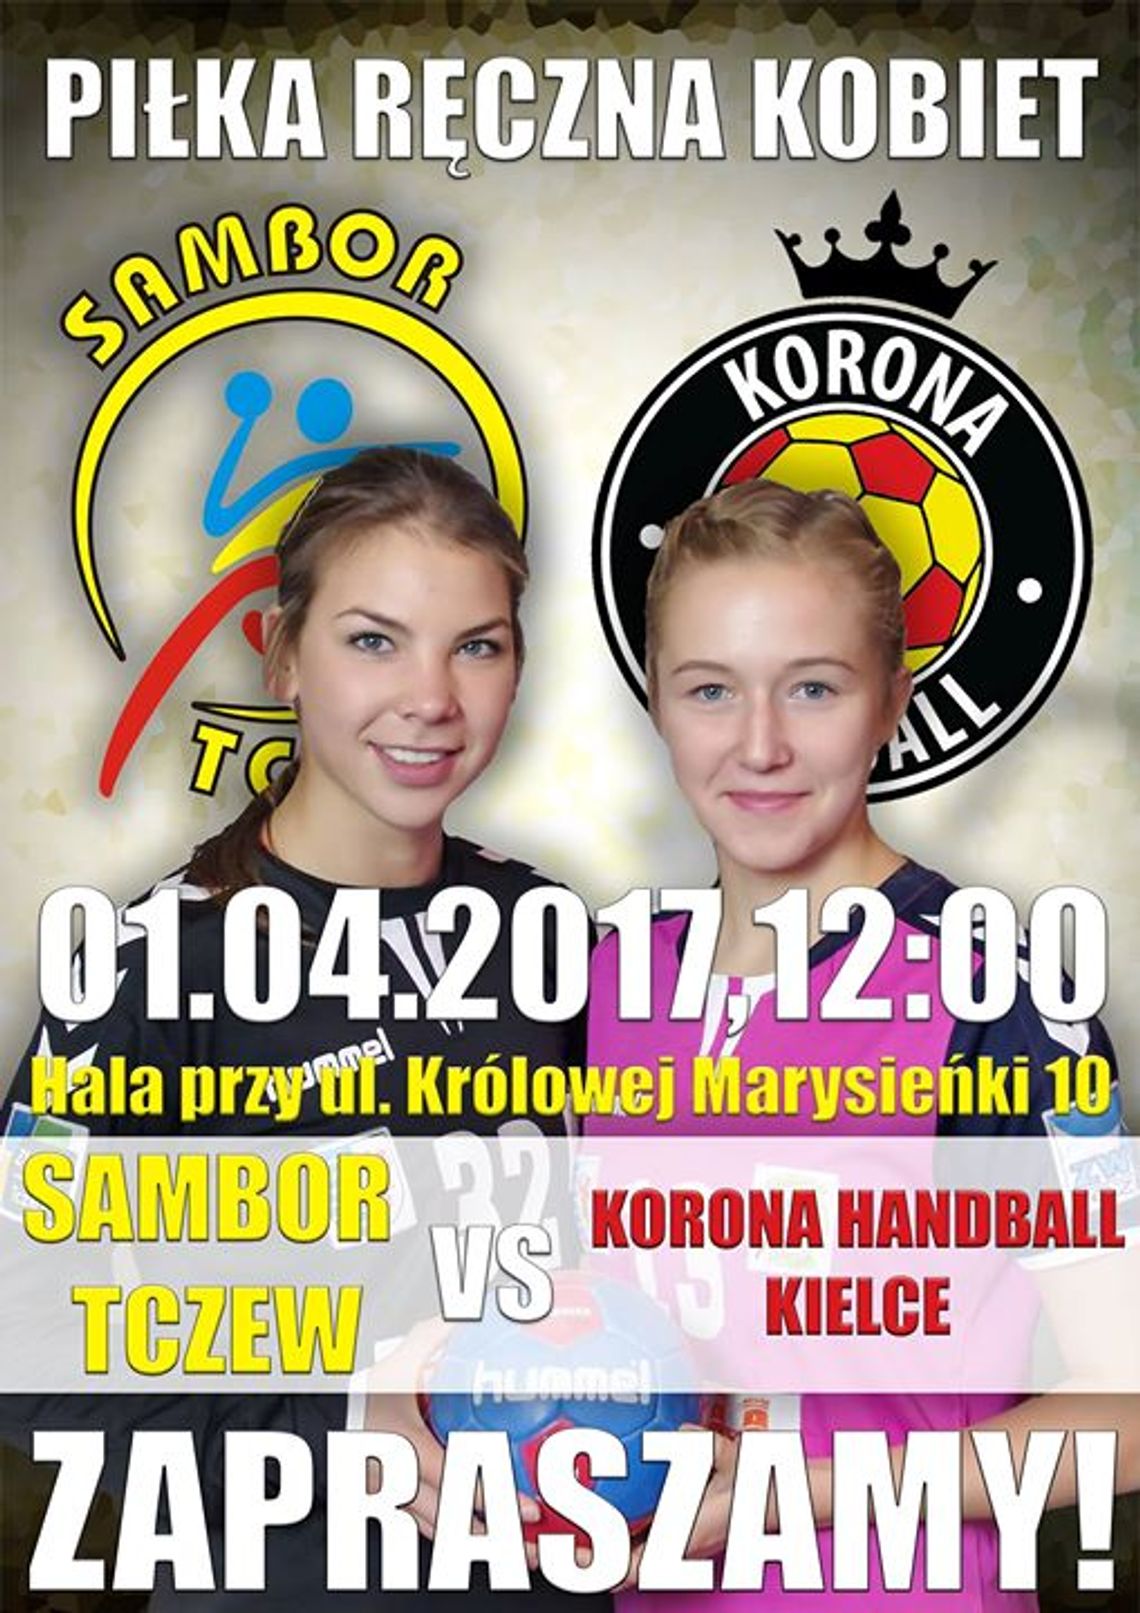 Sambor Tczew vs Korona Handball Kielce